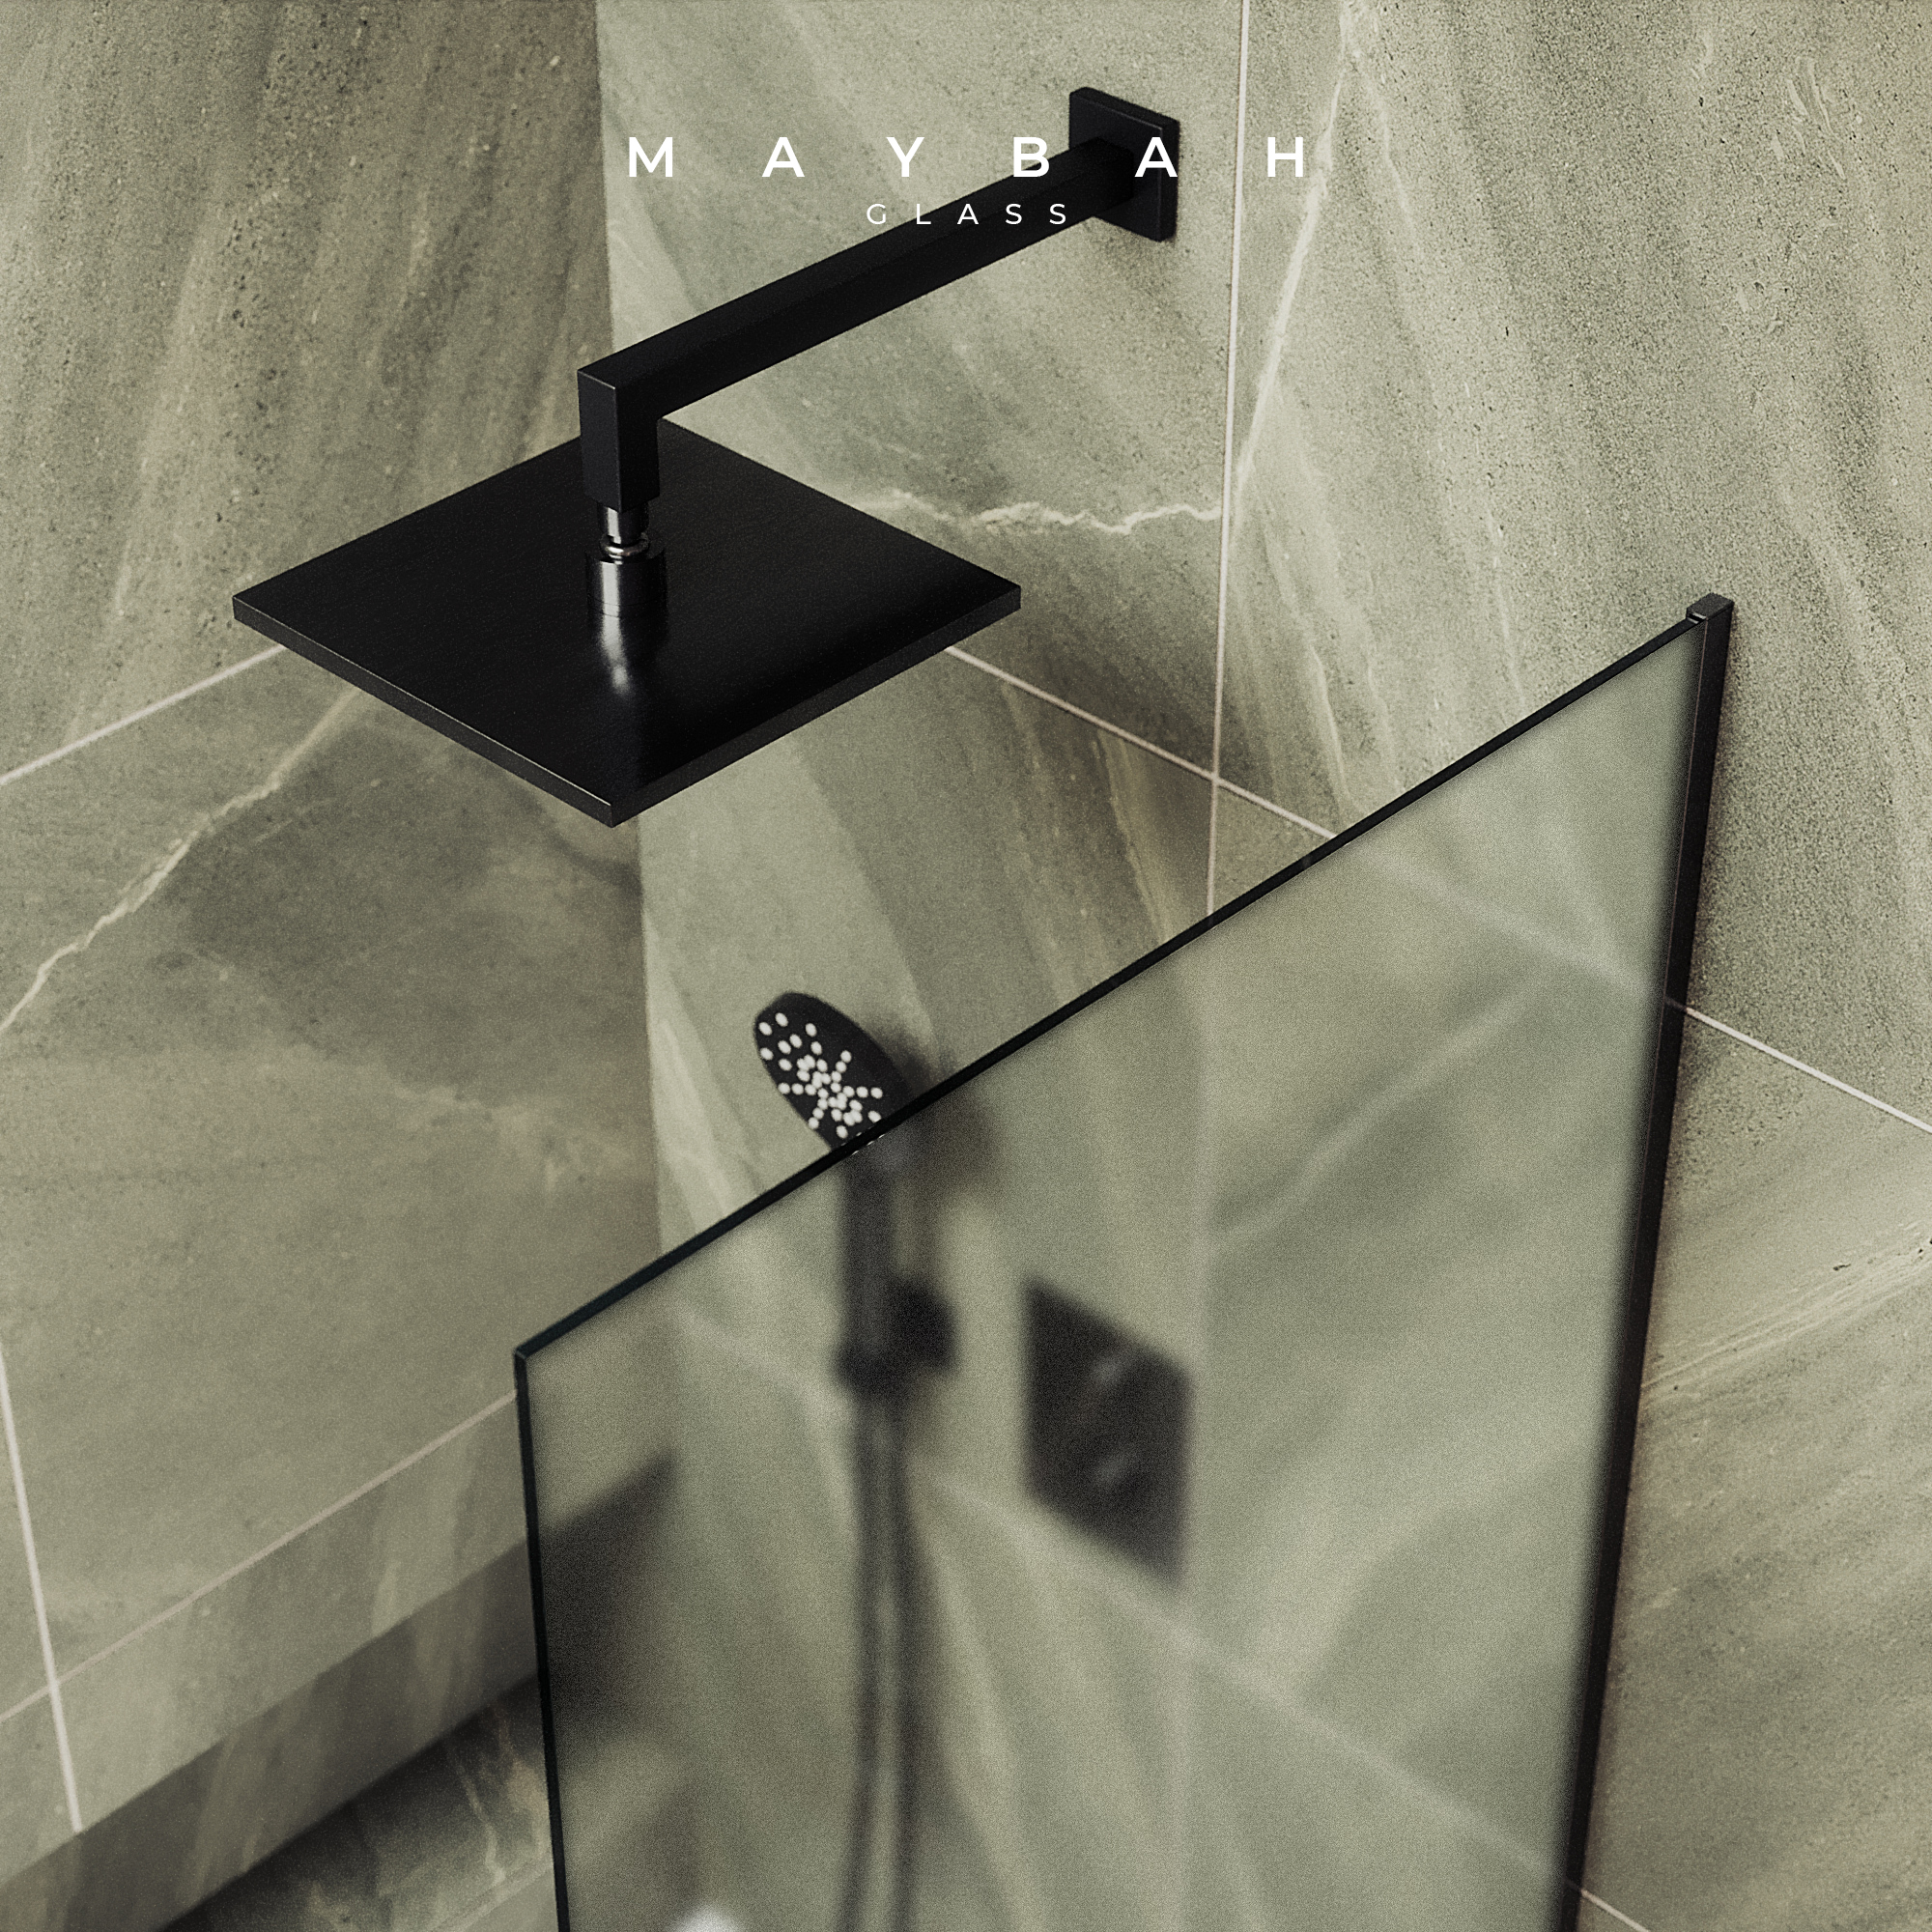 Шторка для ванны MaybahGlass 90х140 MGV-95-6у стекло сатин, профиль черный - фото 4